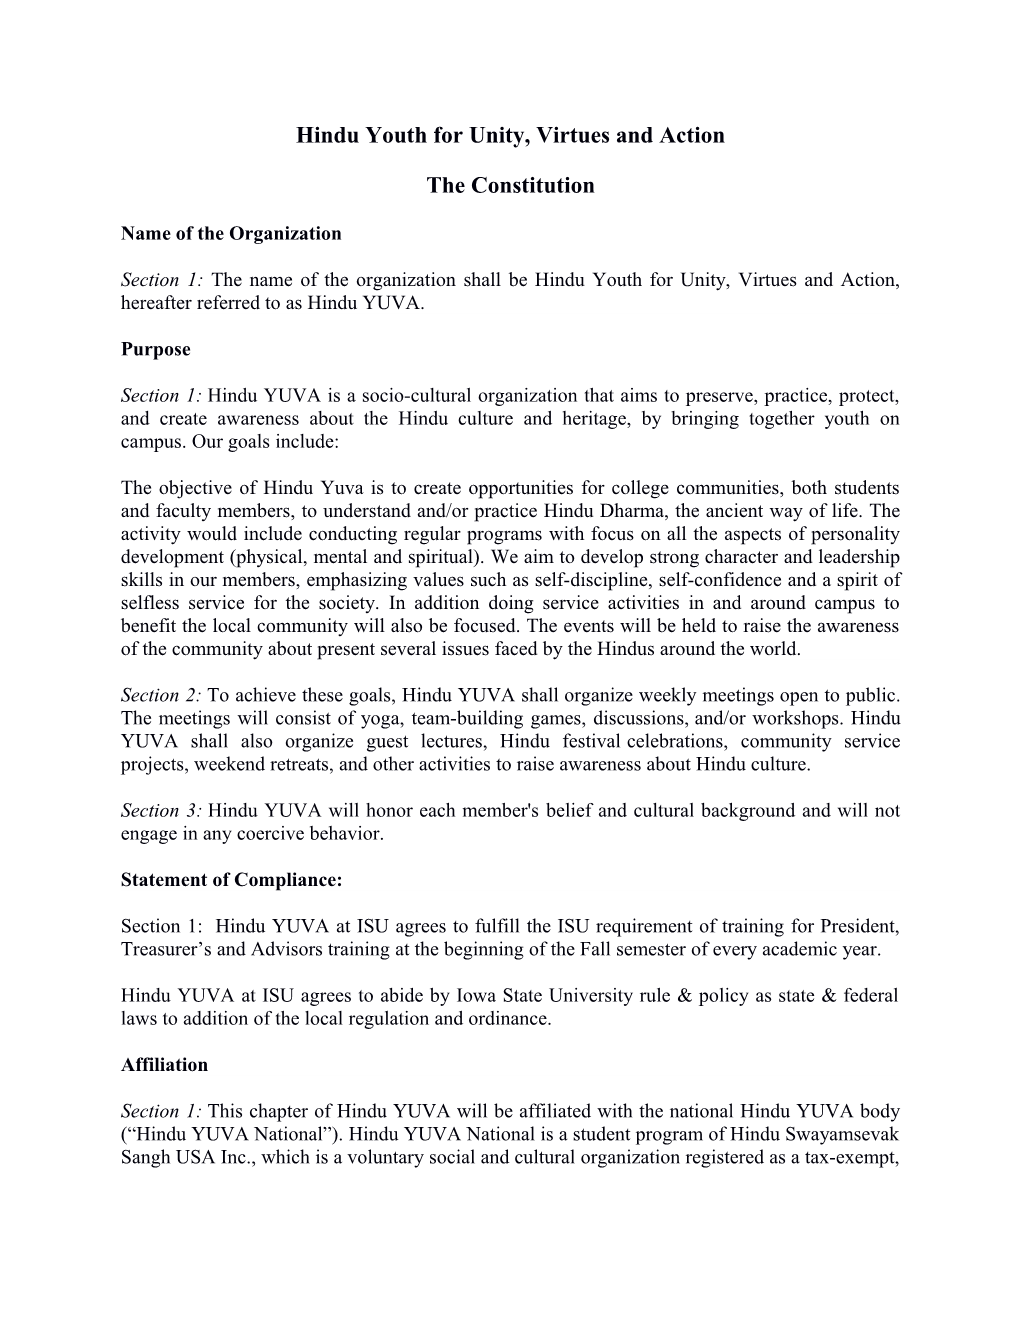 Hindu YUVA Constitution (National)